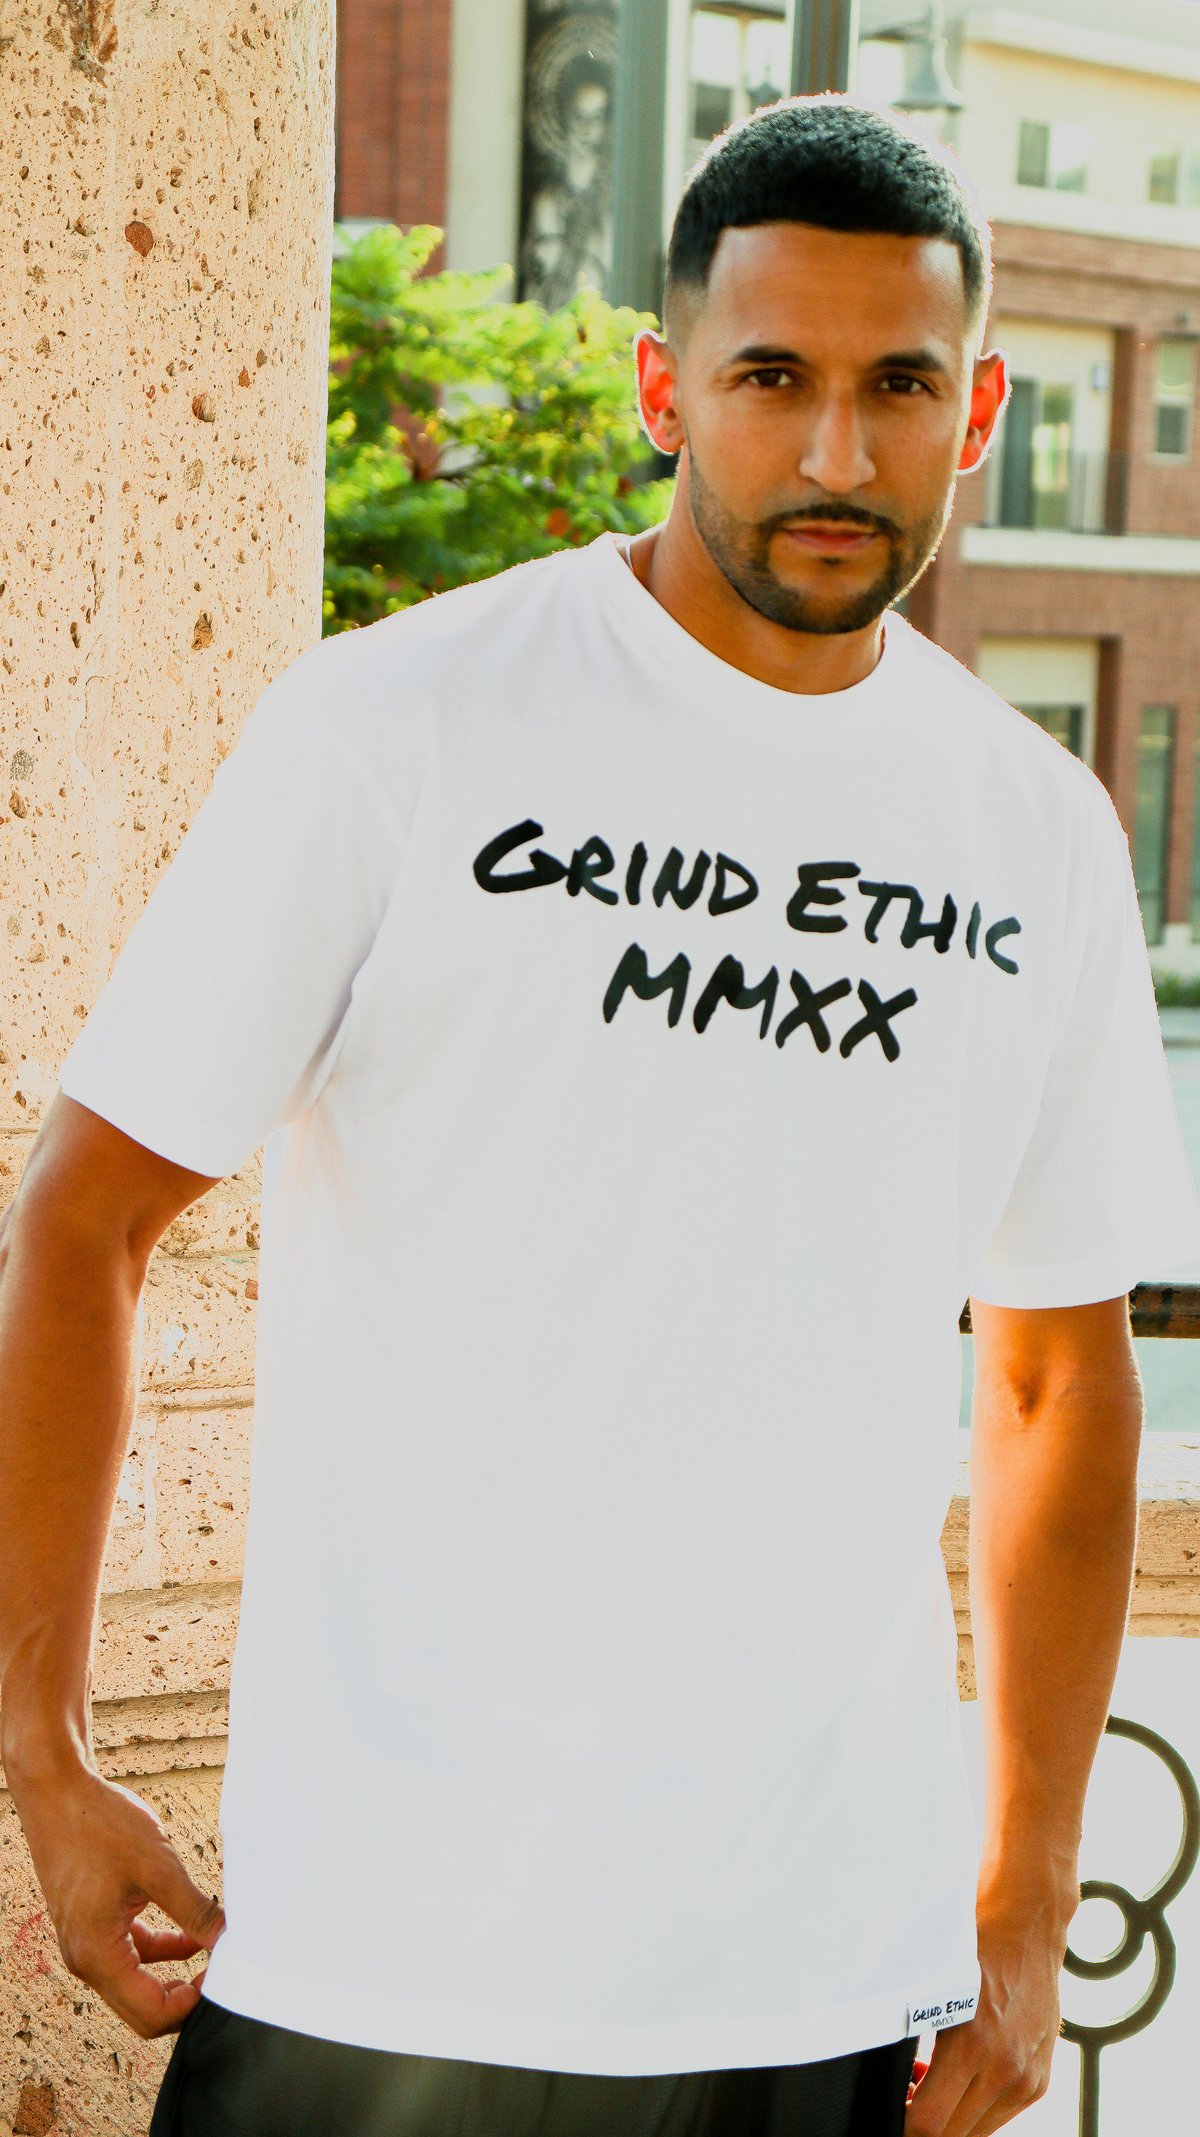 Men's Grind Ethic MMXX T-Shirt